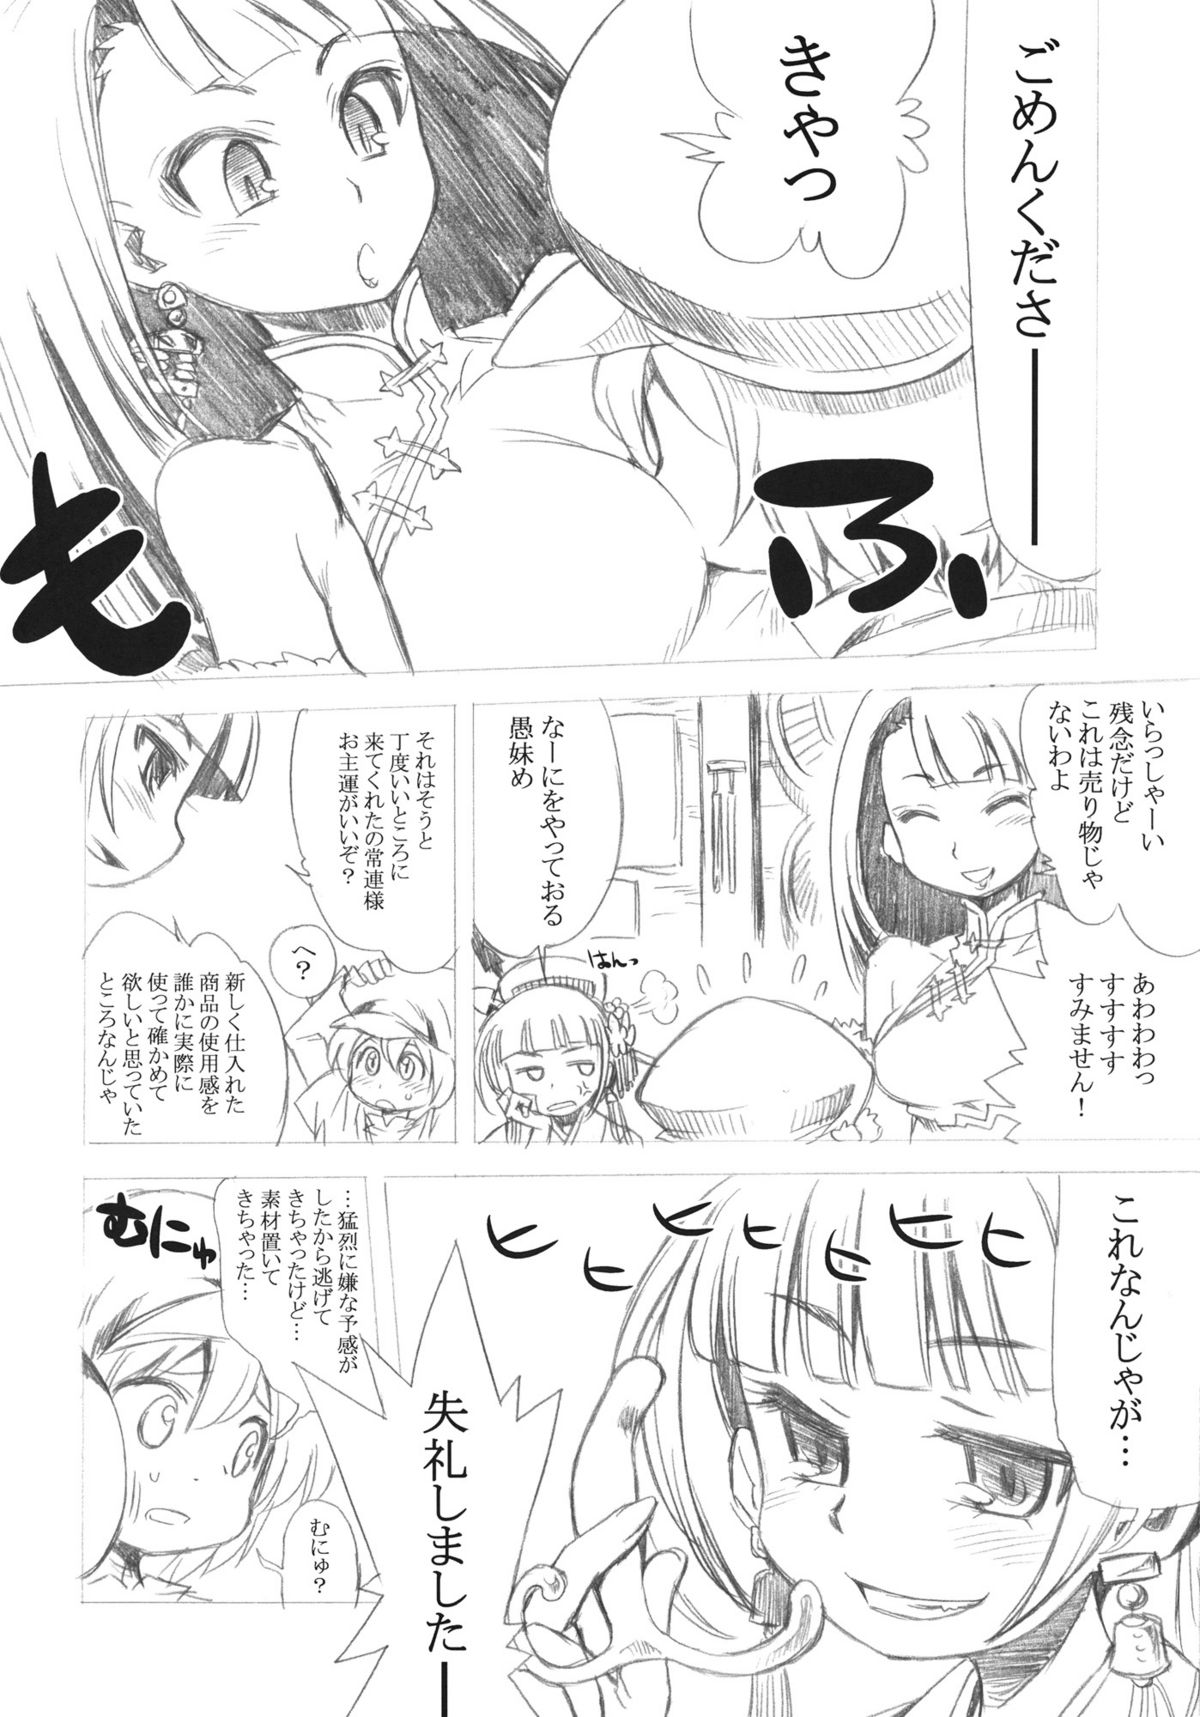 (SC52) [Kazeuma (Minami Star)] Sekaiju no Anone 16 (Etrian Odyssey) page 38 full